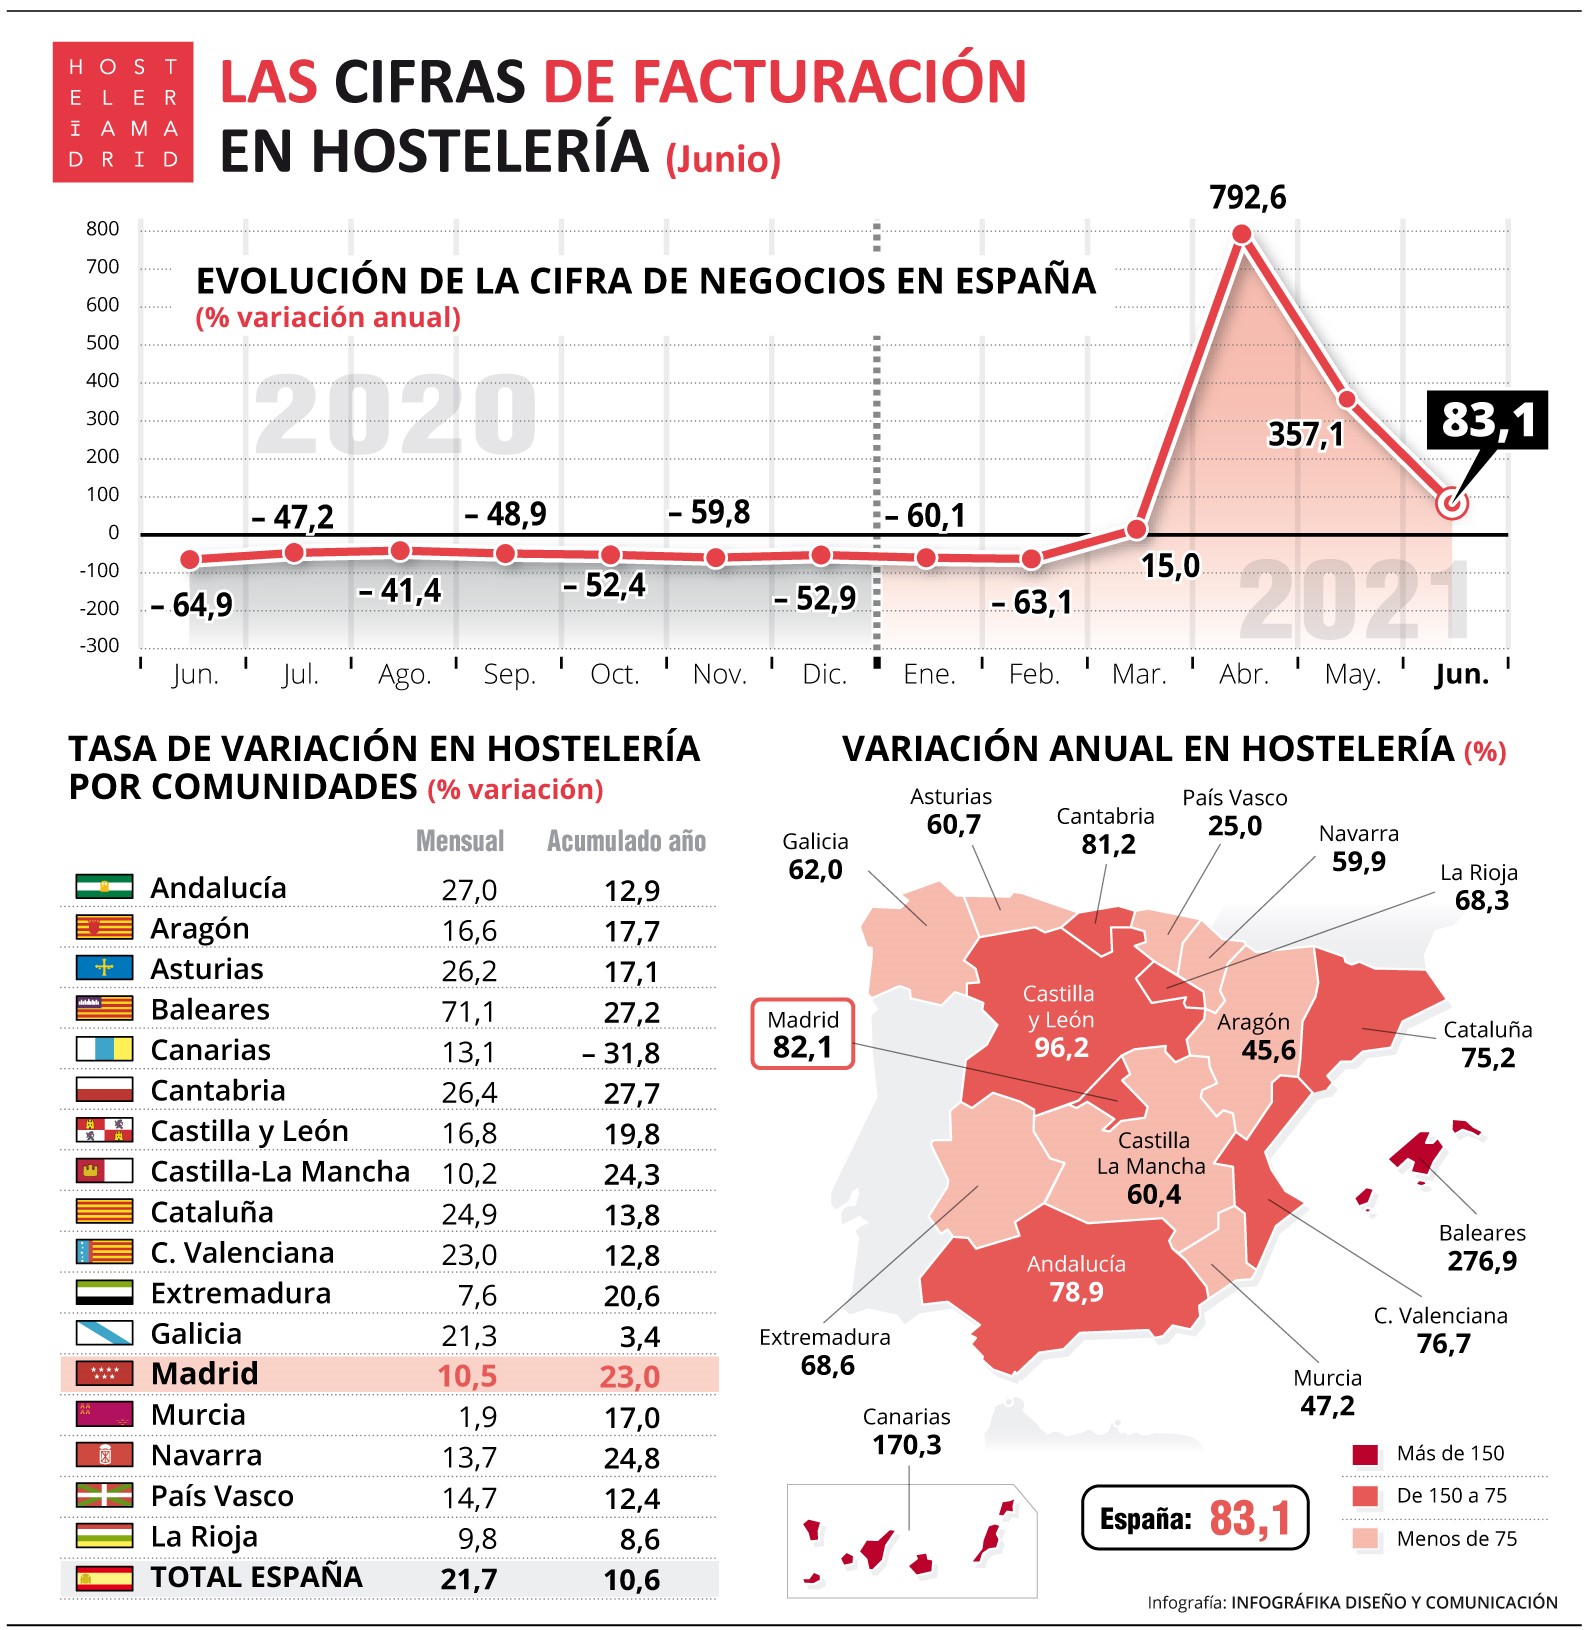 La hostelería todavía factura en junio un 35% menos que en 2019 (pre-COVID) - La Viña